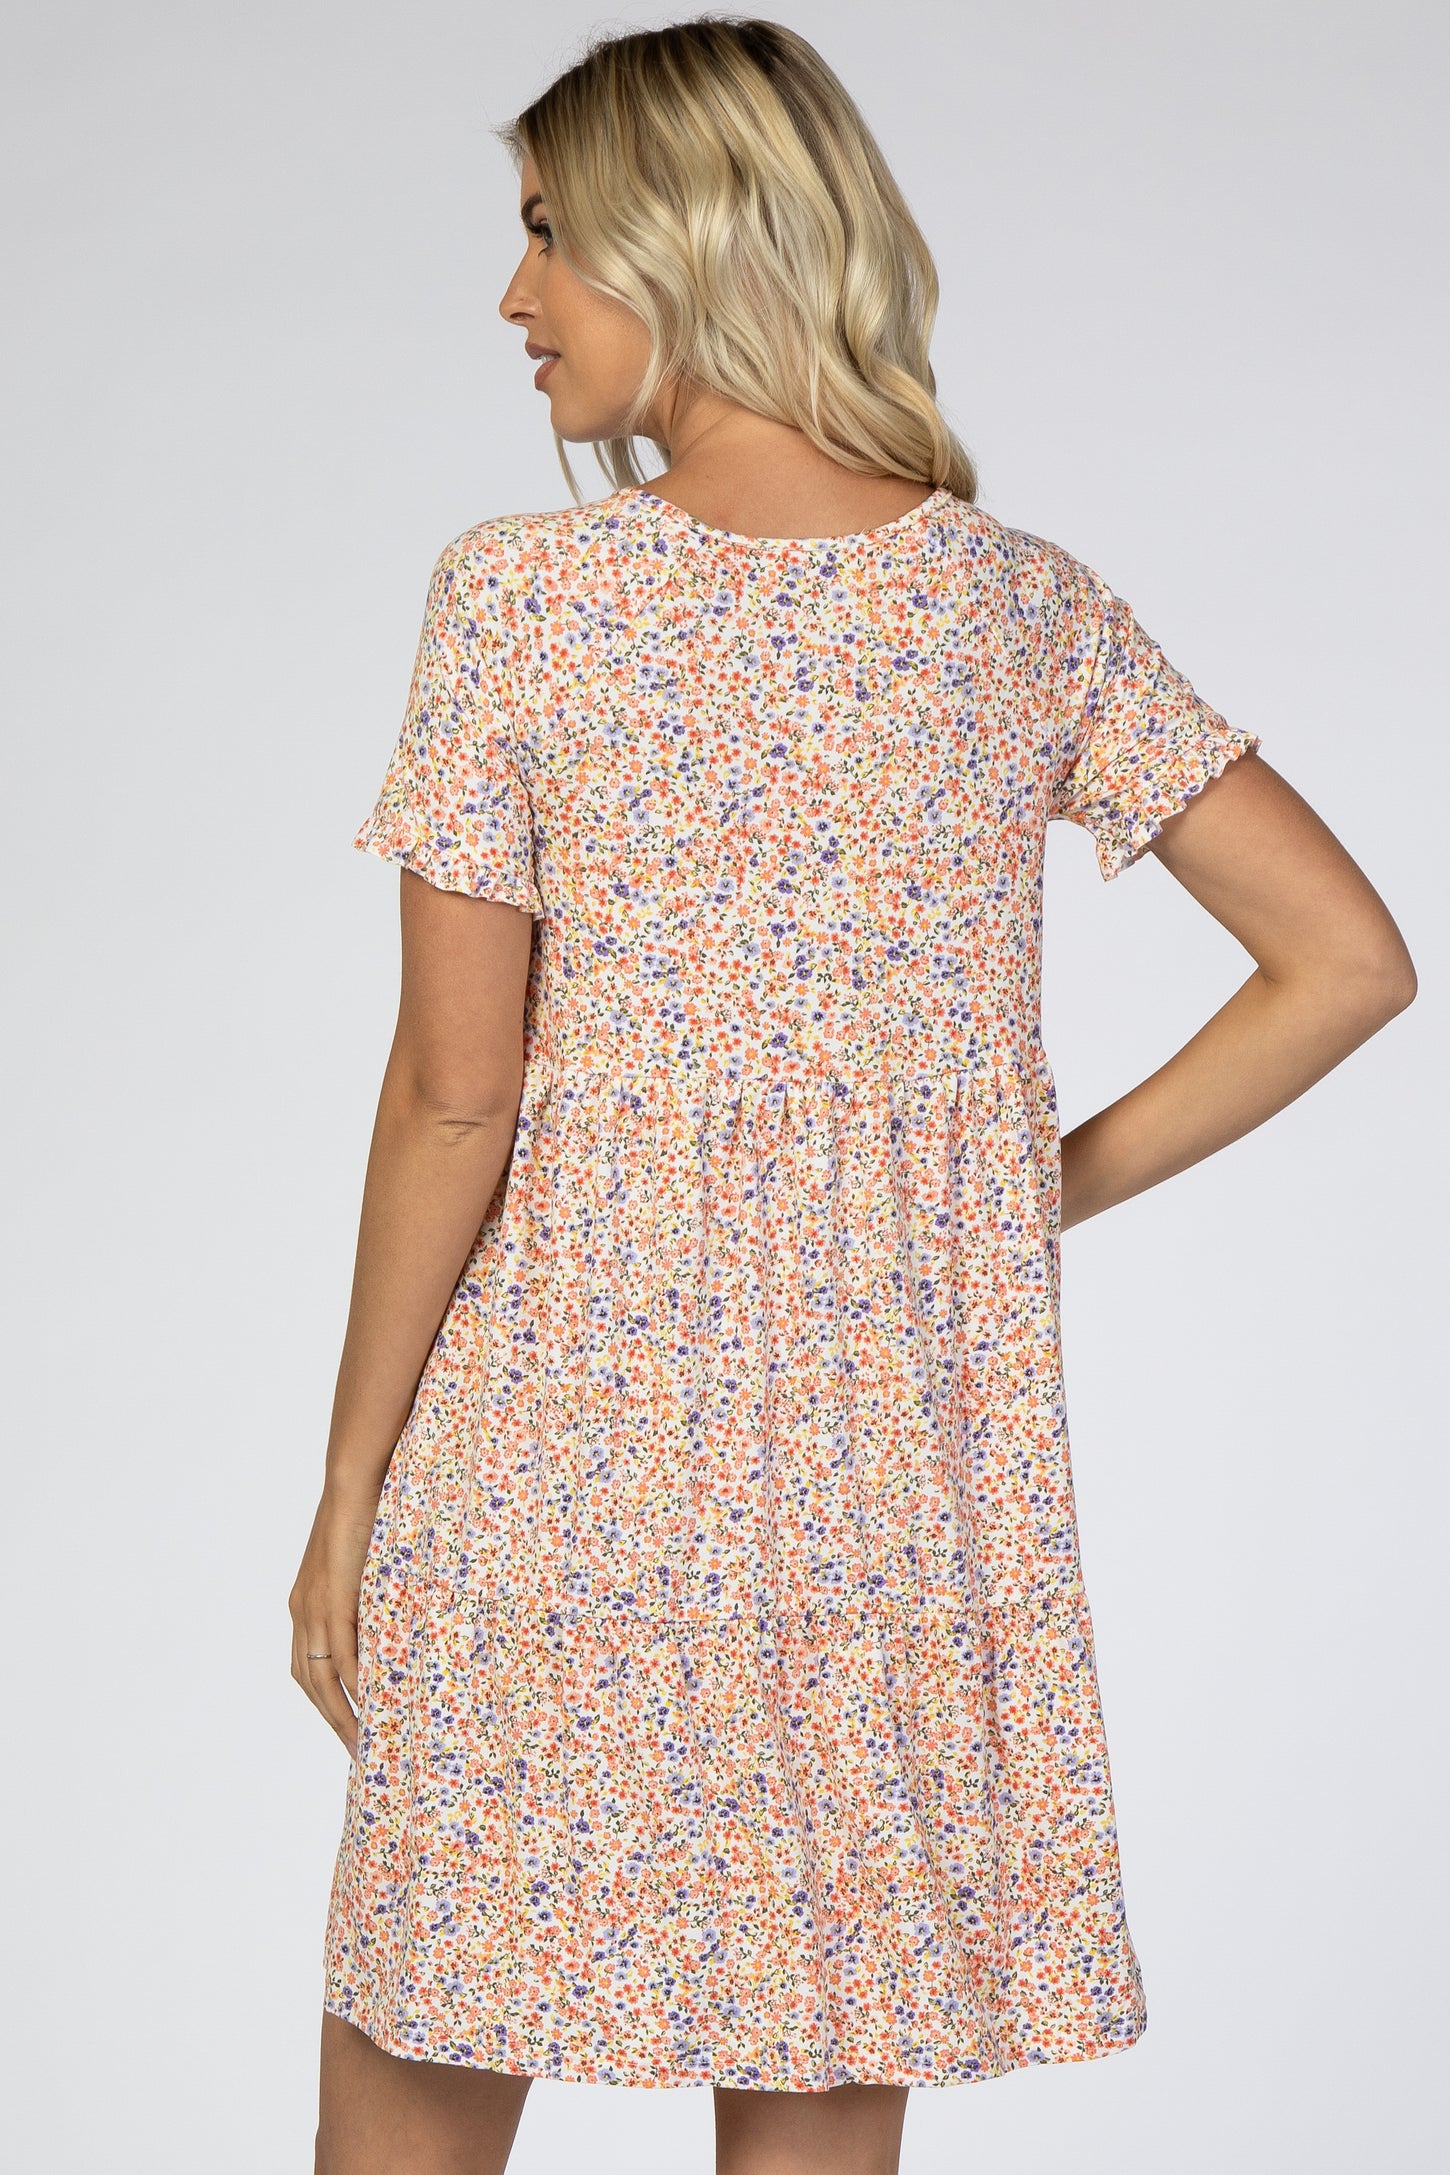 Peach Floral Button Front Dress